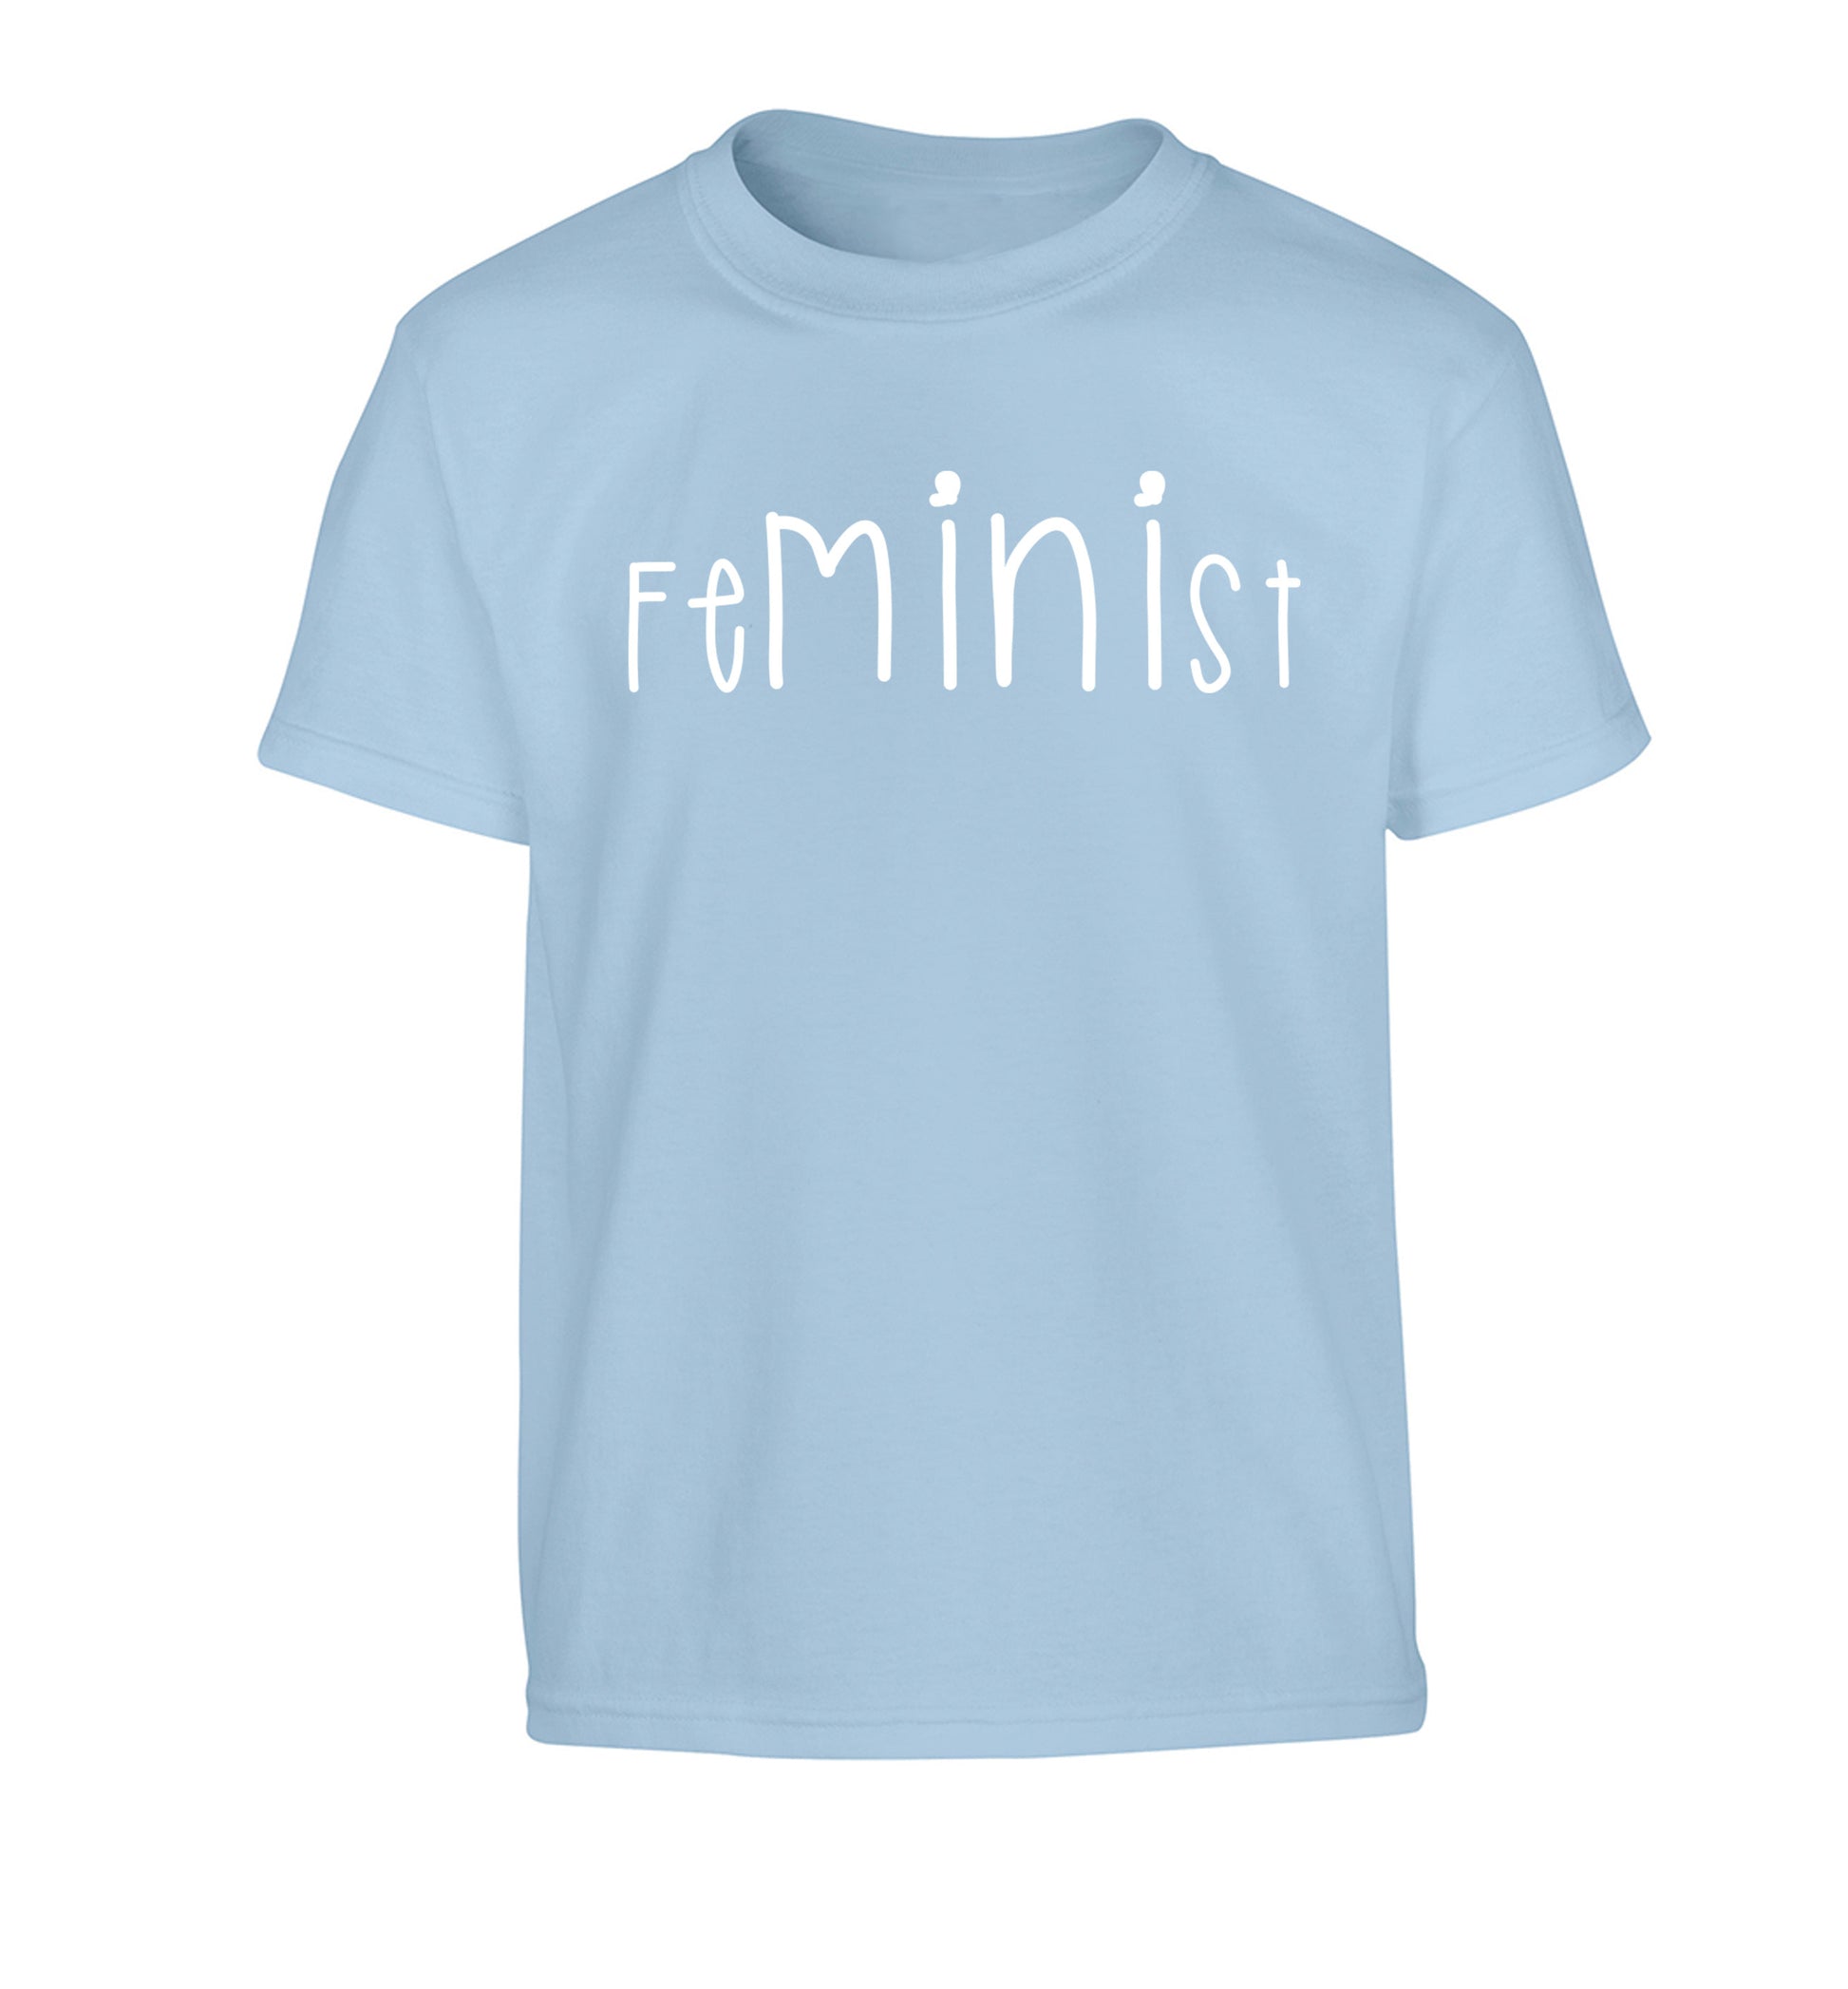 FeMINIst Children's light blue Tshirt 12-14 Years